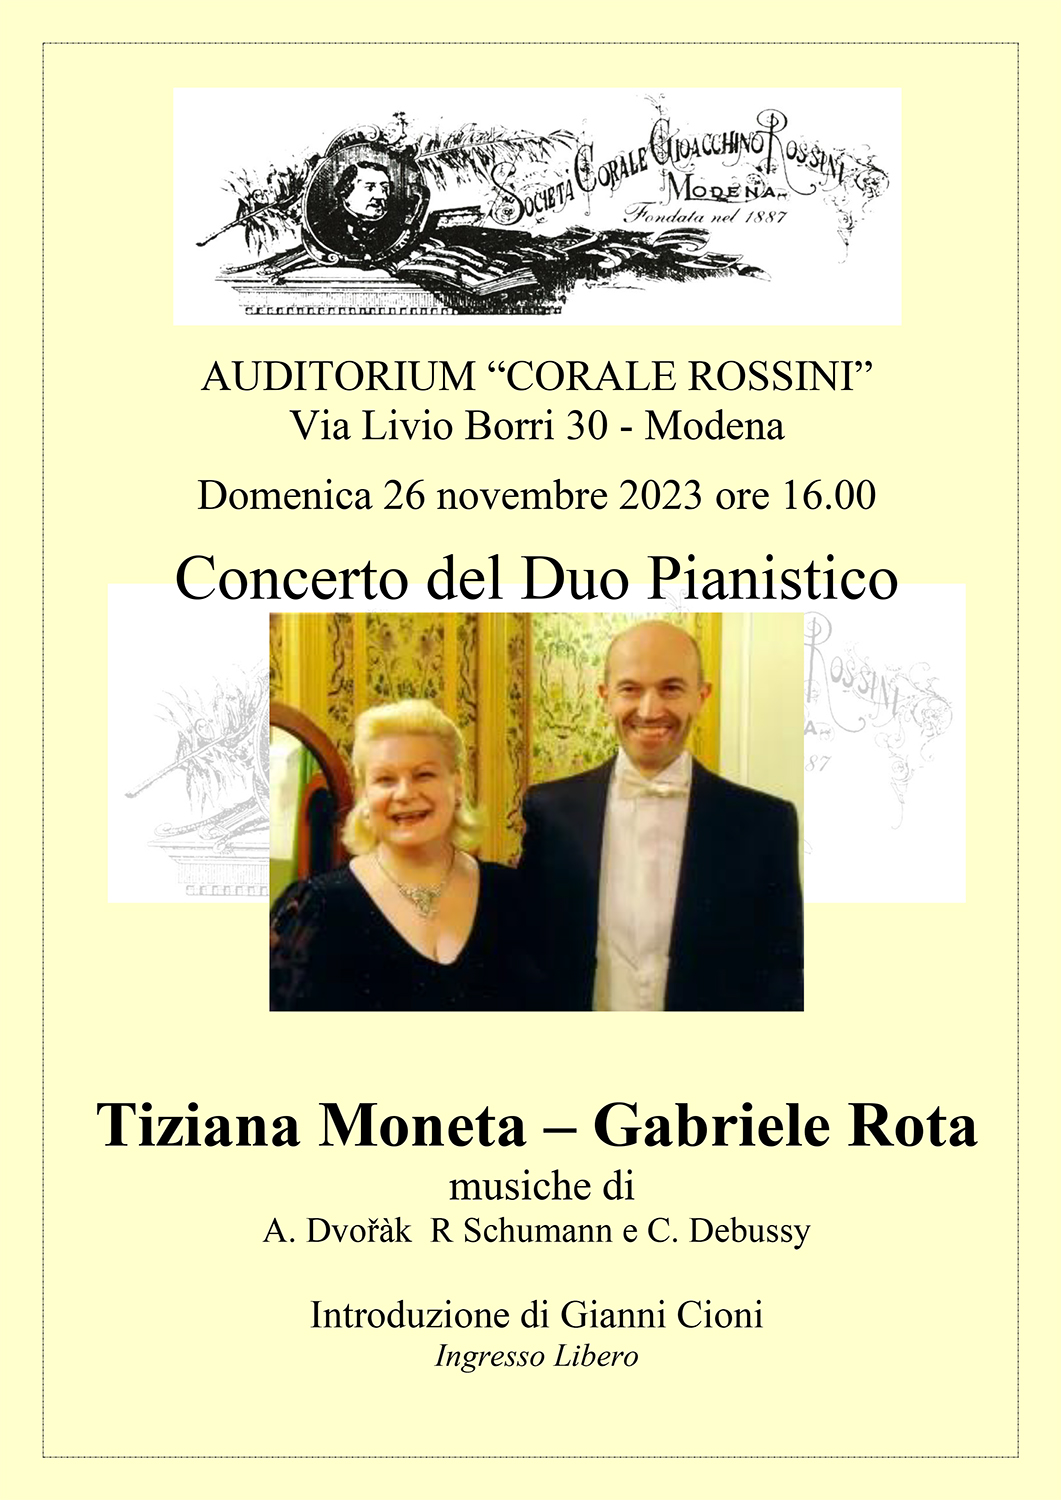 Concerto duo pianistico – 26 nov.